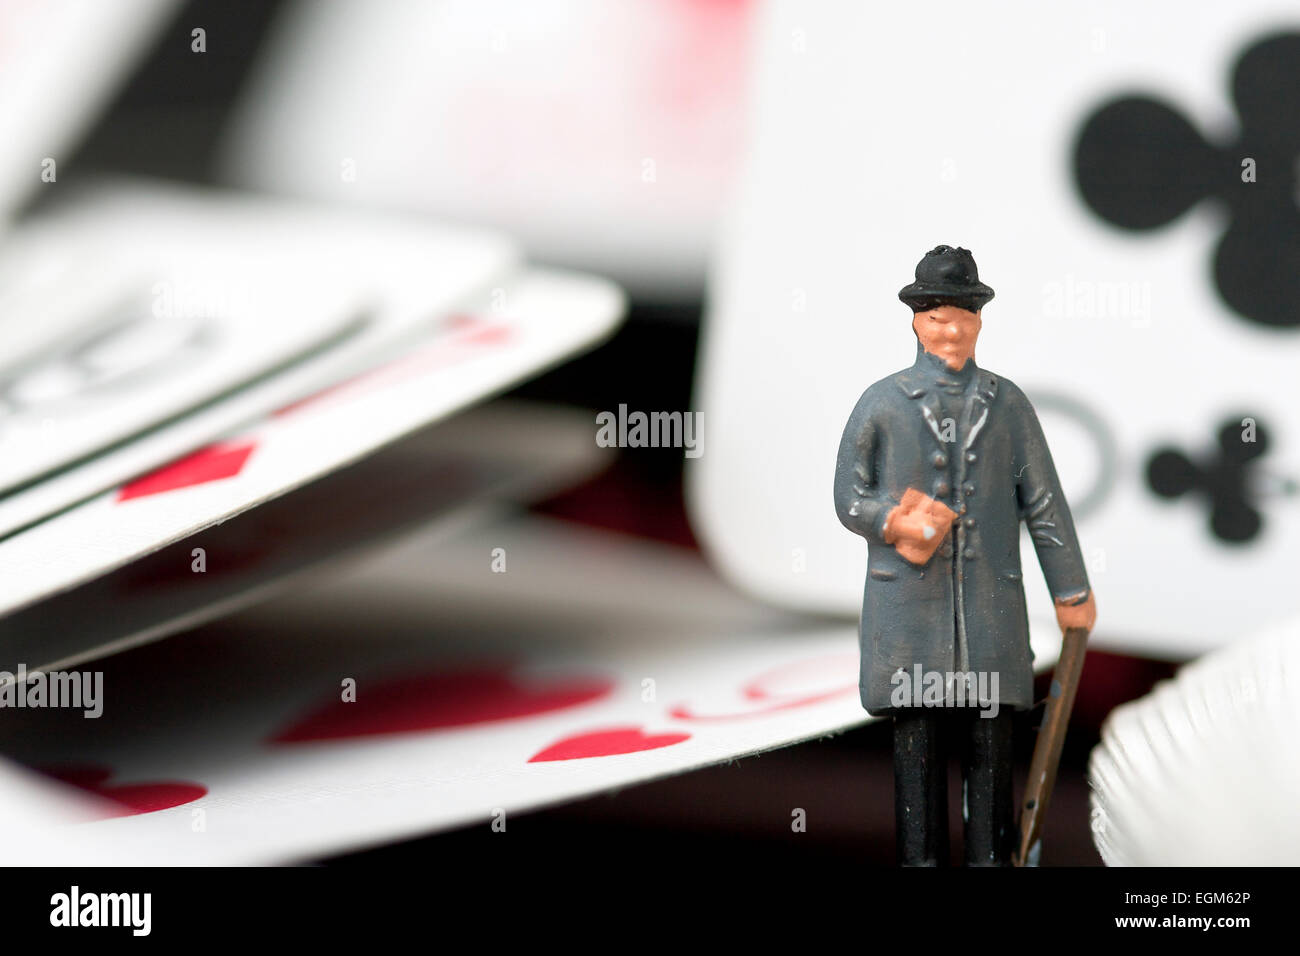 Una miniatura del modello in scala figura in piedi tra un set di carte da gioco. Foto Stock